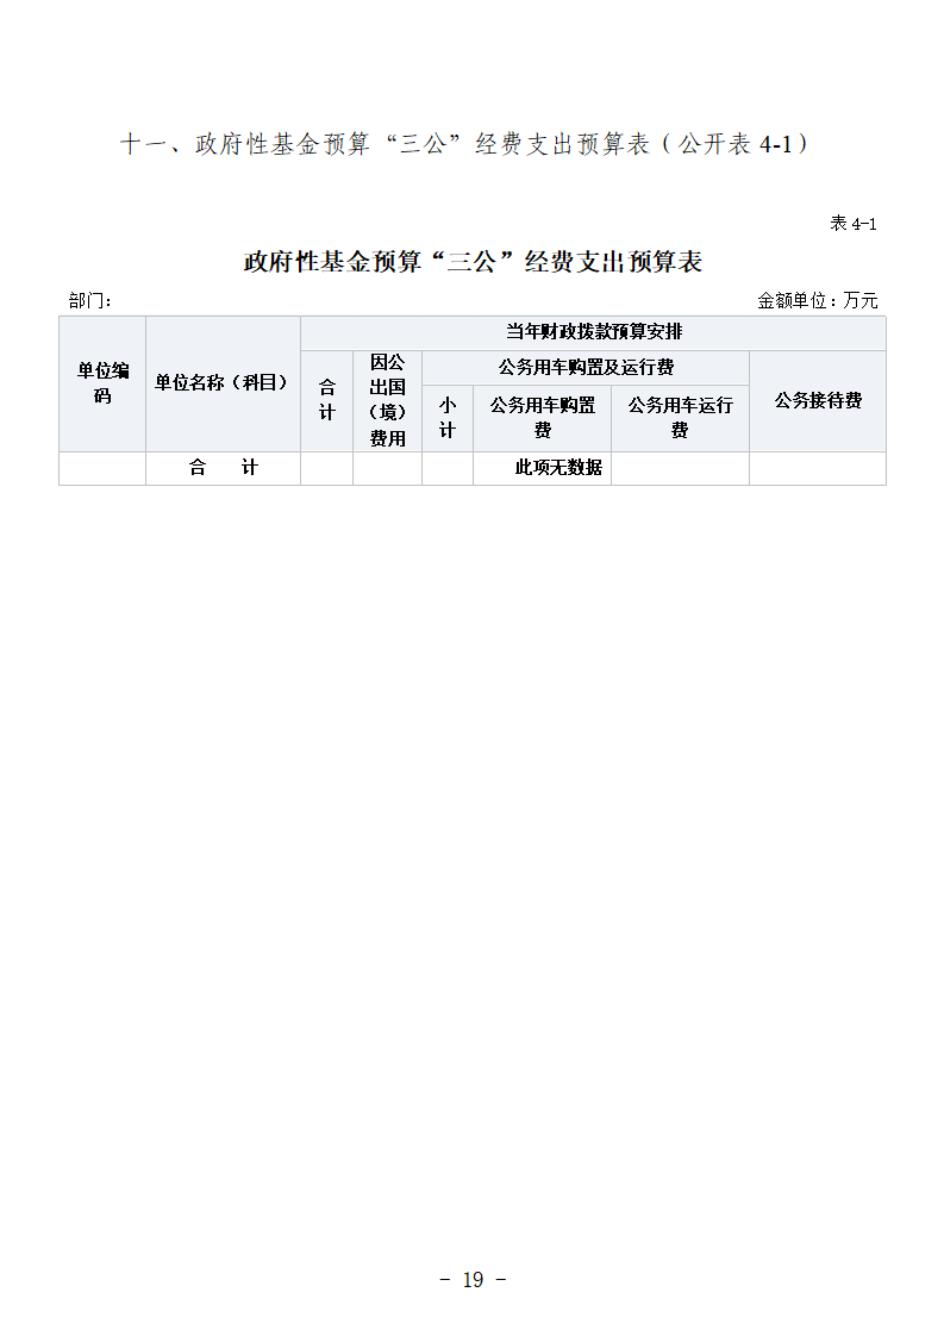 省考古院2024年四川省省级单位预算公开模板(3.14)_20.jpg